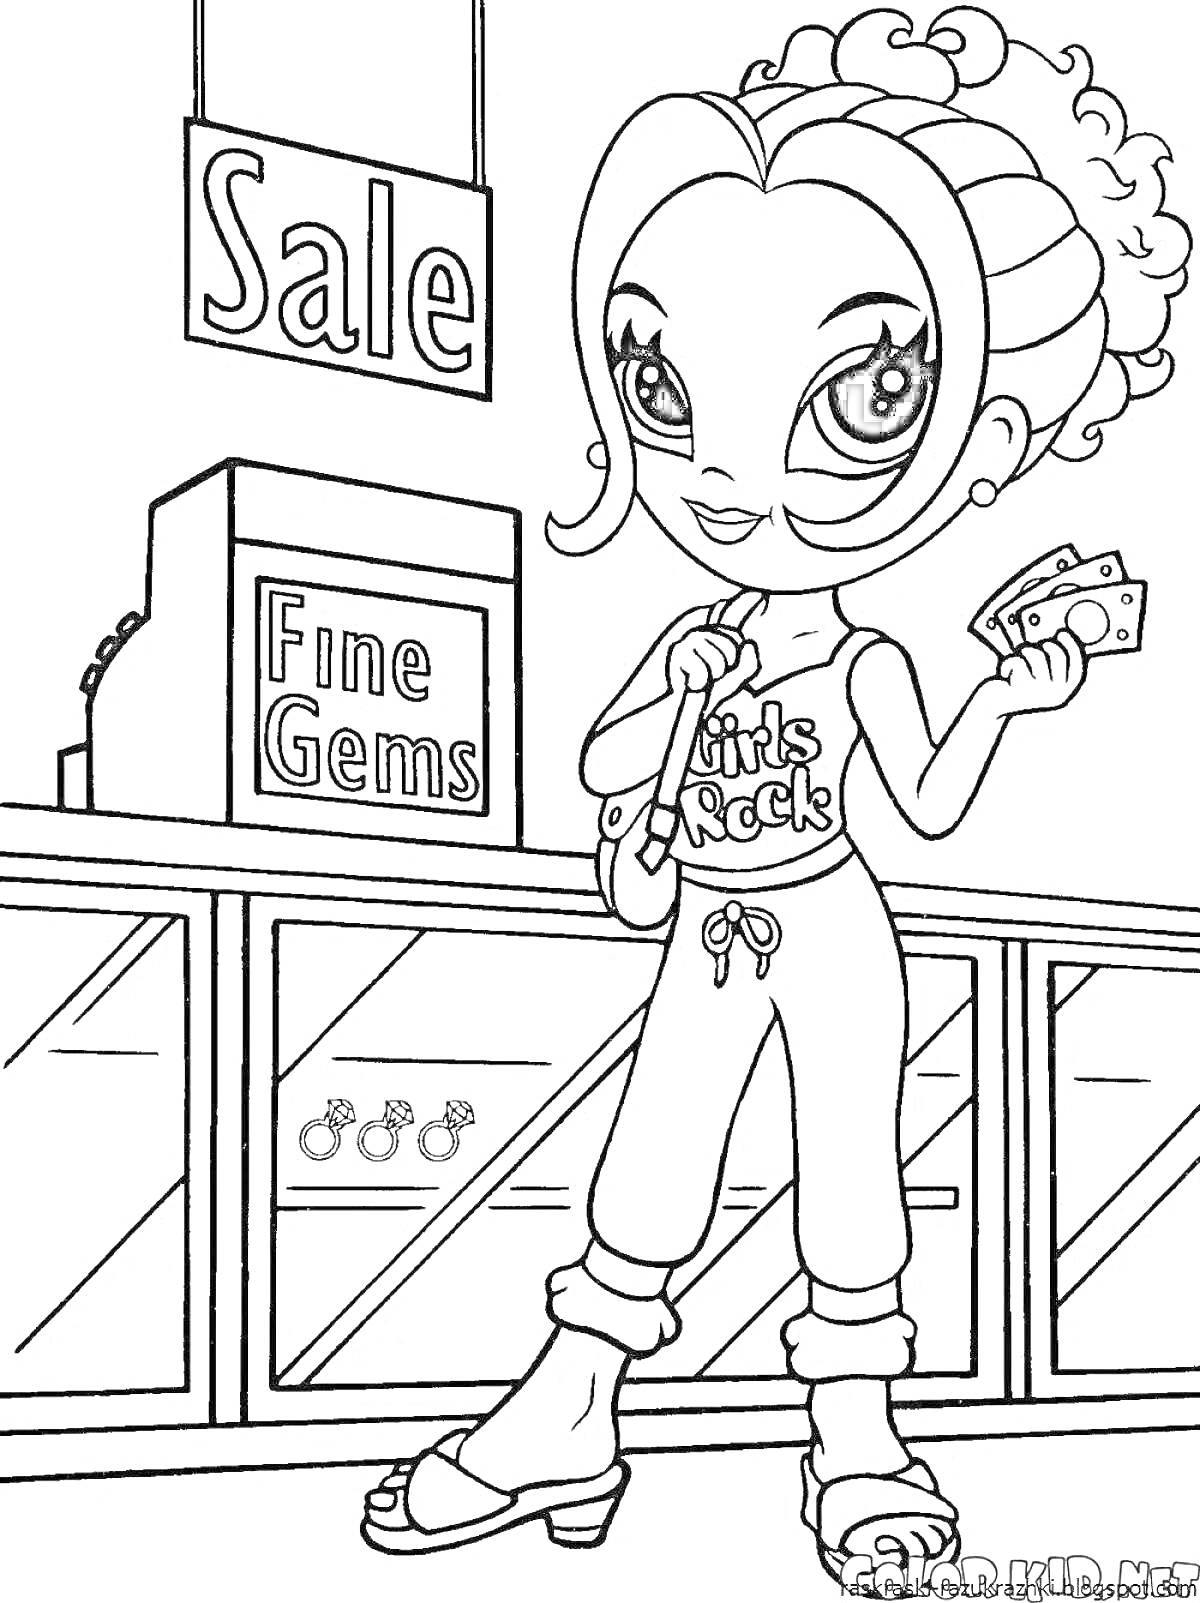 Раскраска Девочка с завитыми волосами и большим взглядом, одетая в футболку с надписью 